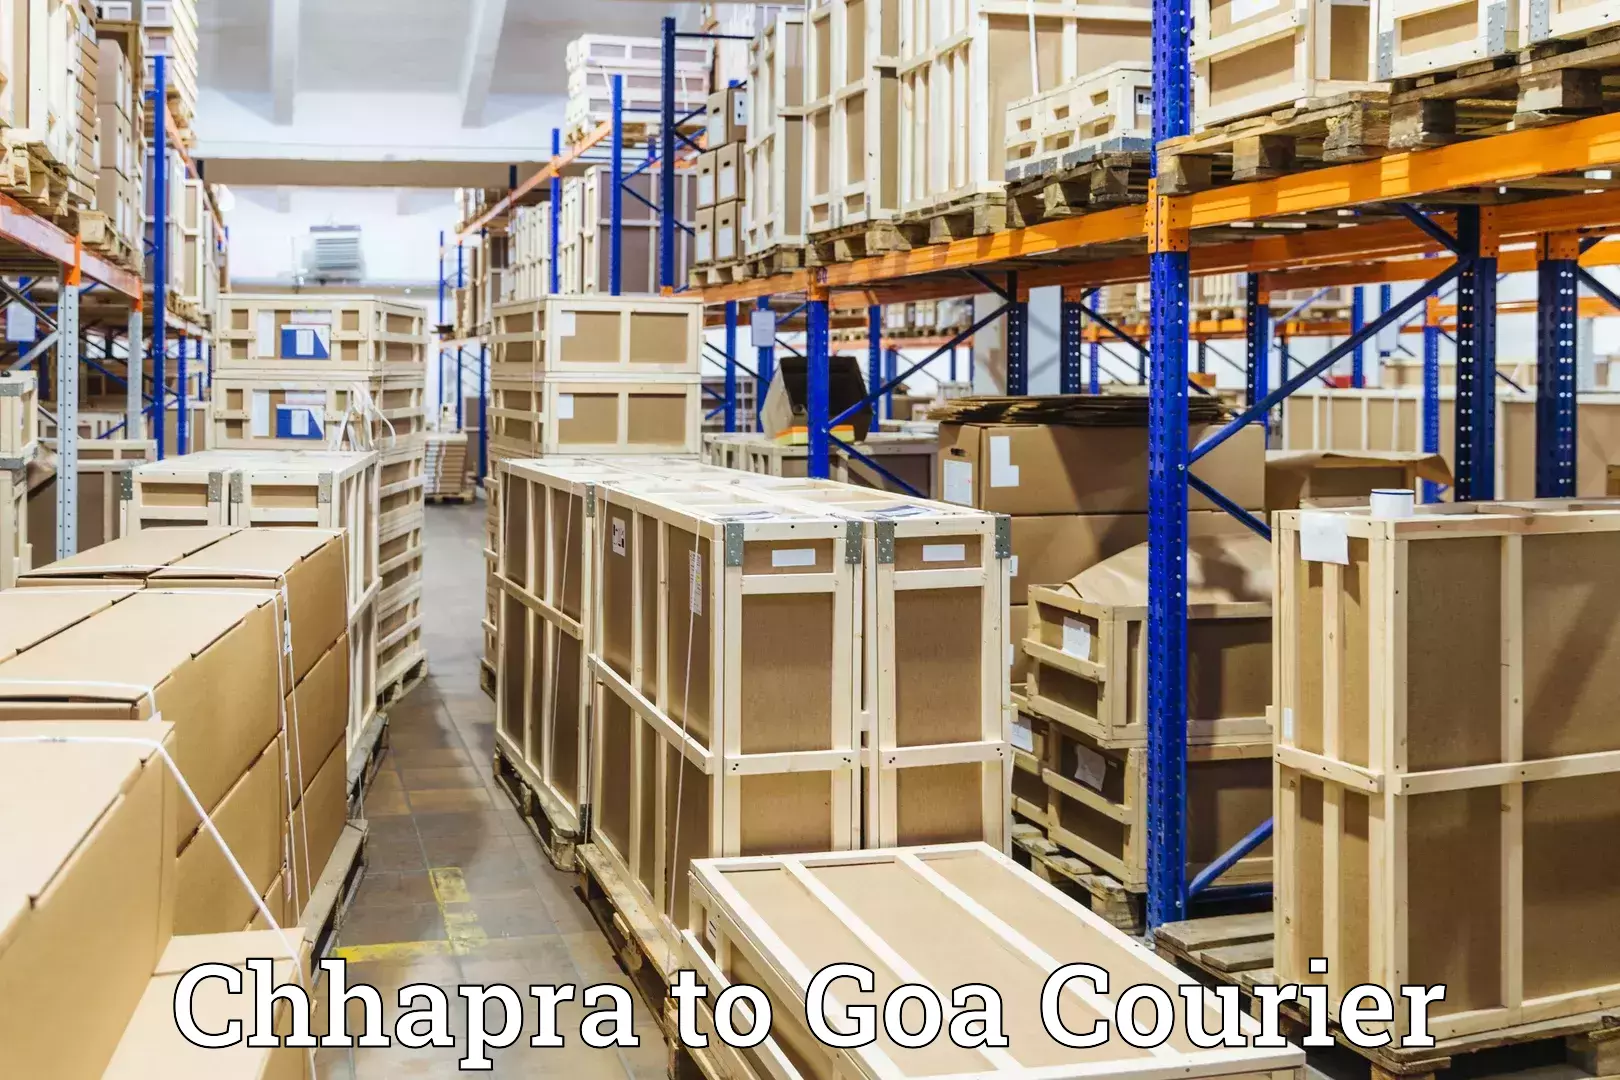 Luggage transfer service Chhapra to Goa